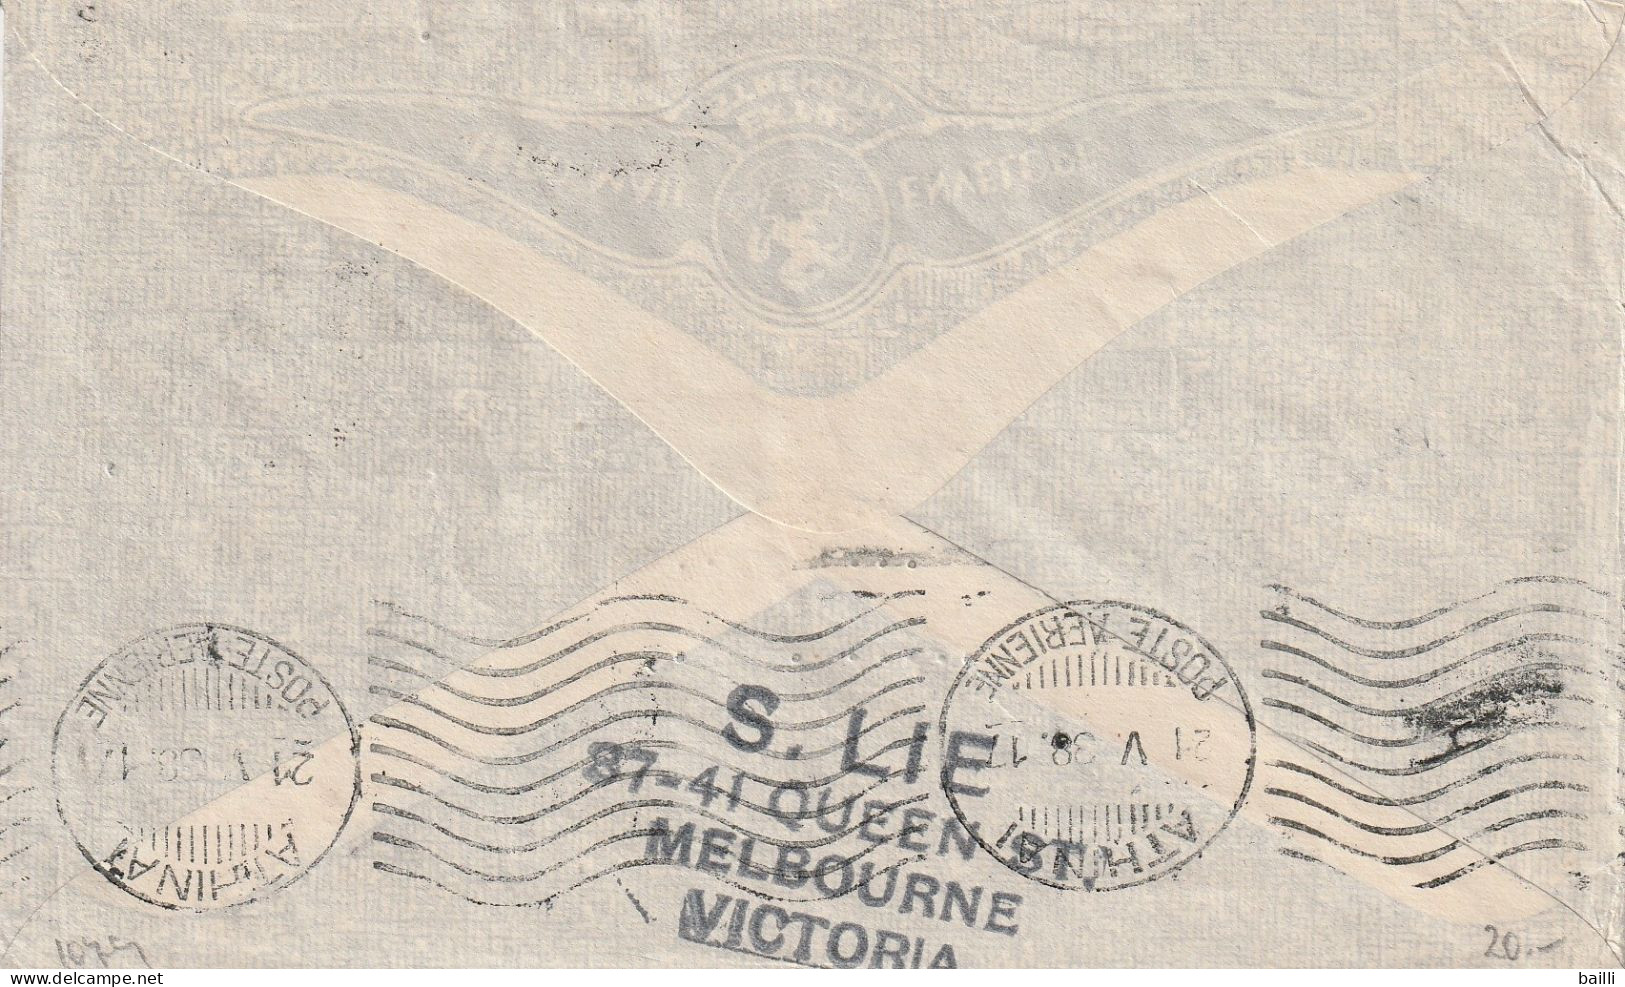 Australie Lettre Pour L'Allemagne Via La Grèce 1938 - Lettres & Documents